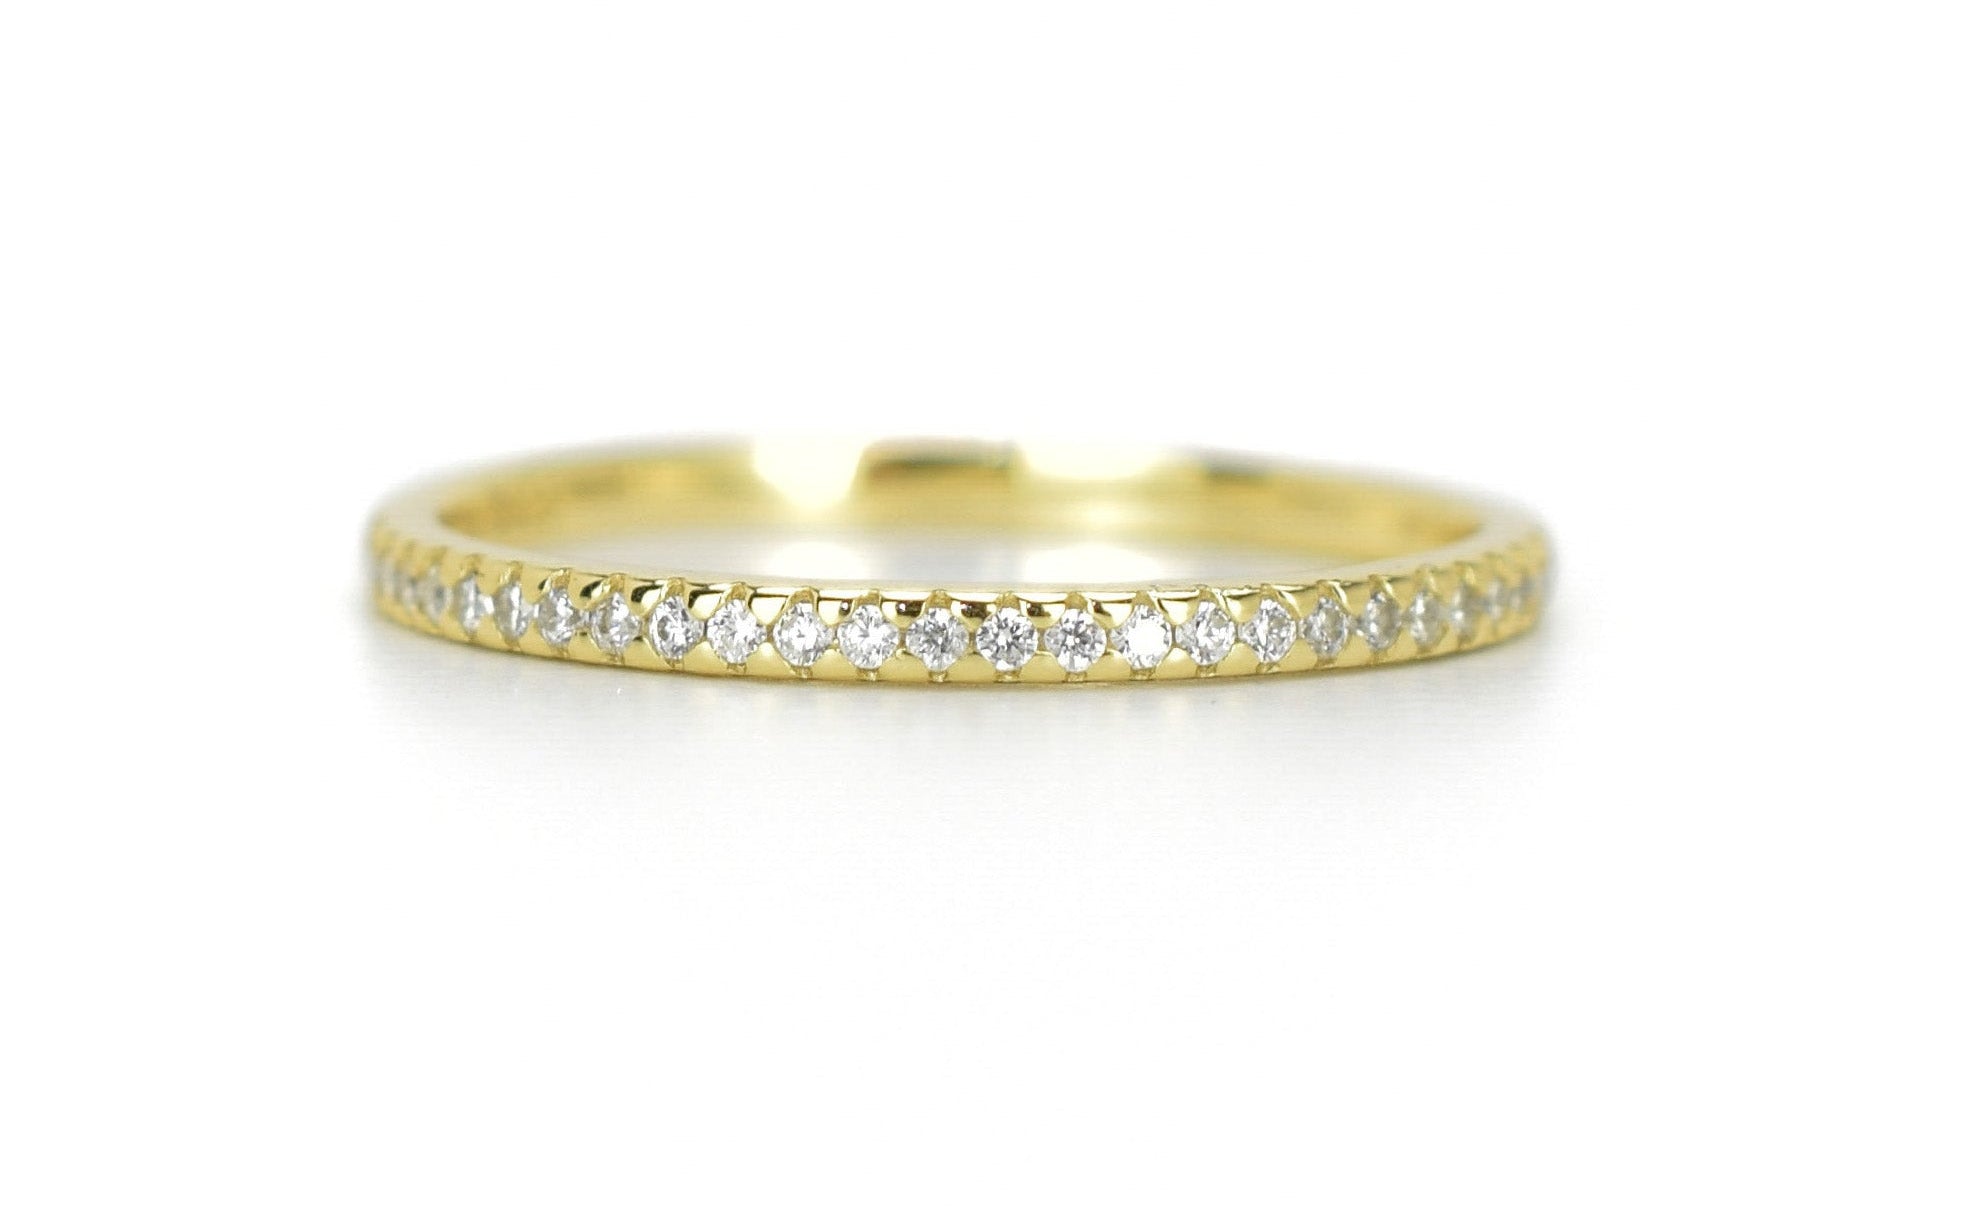 dunnen ring, 18k gouden ring, aanschuifring goud, stapelring goud, fine jewelry, gold ring, 18k Gold Ring, aanschuifring goud, zilveren aanschuifring, ring met stenen, infinity ring rosegoud, trouwring zilver